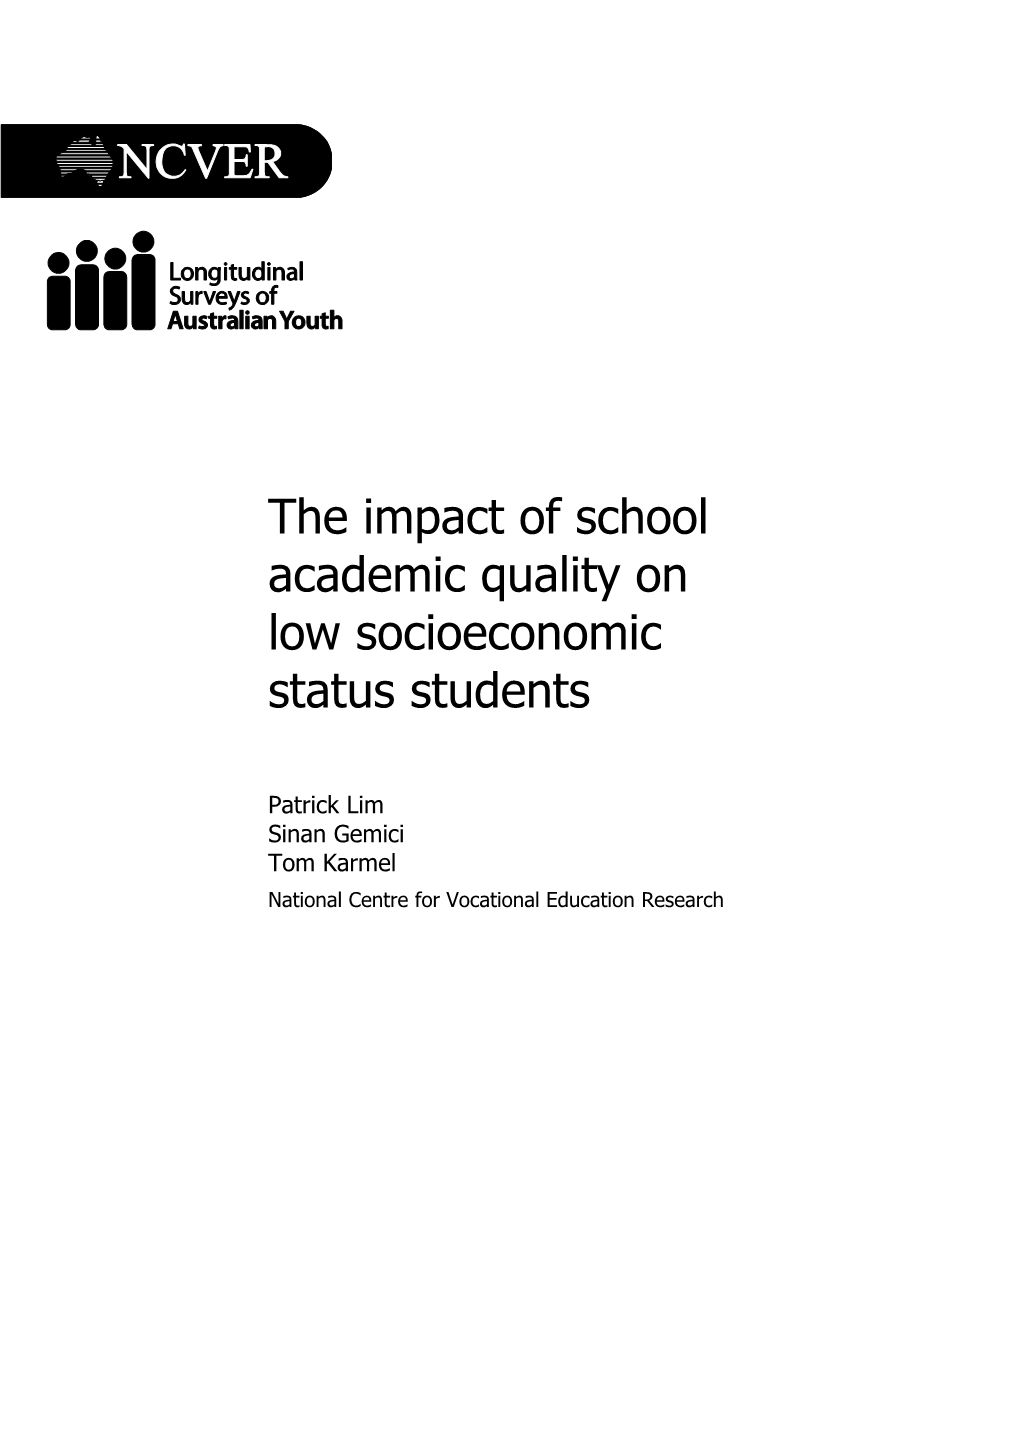 The Impact of School Academic Quality on Low Socioeconomic Status Students